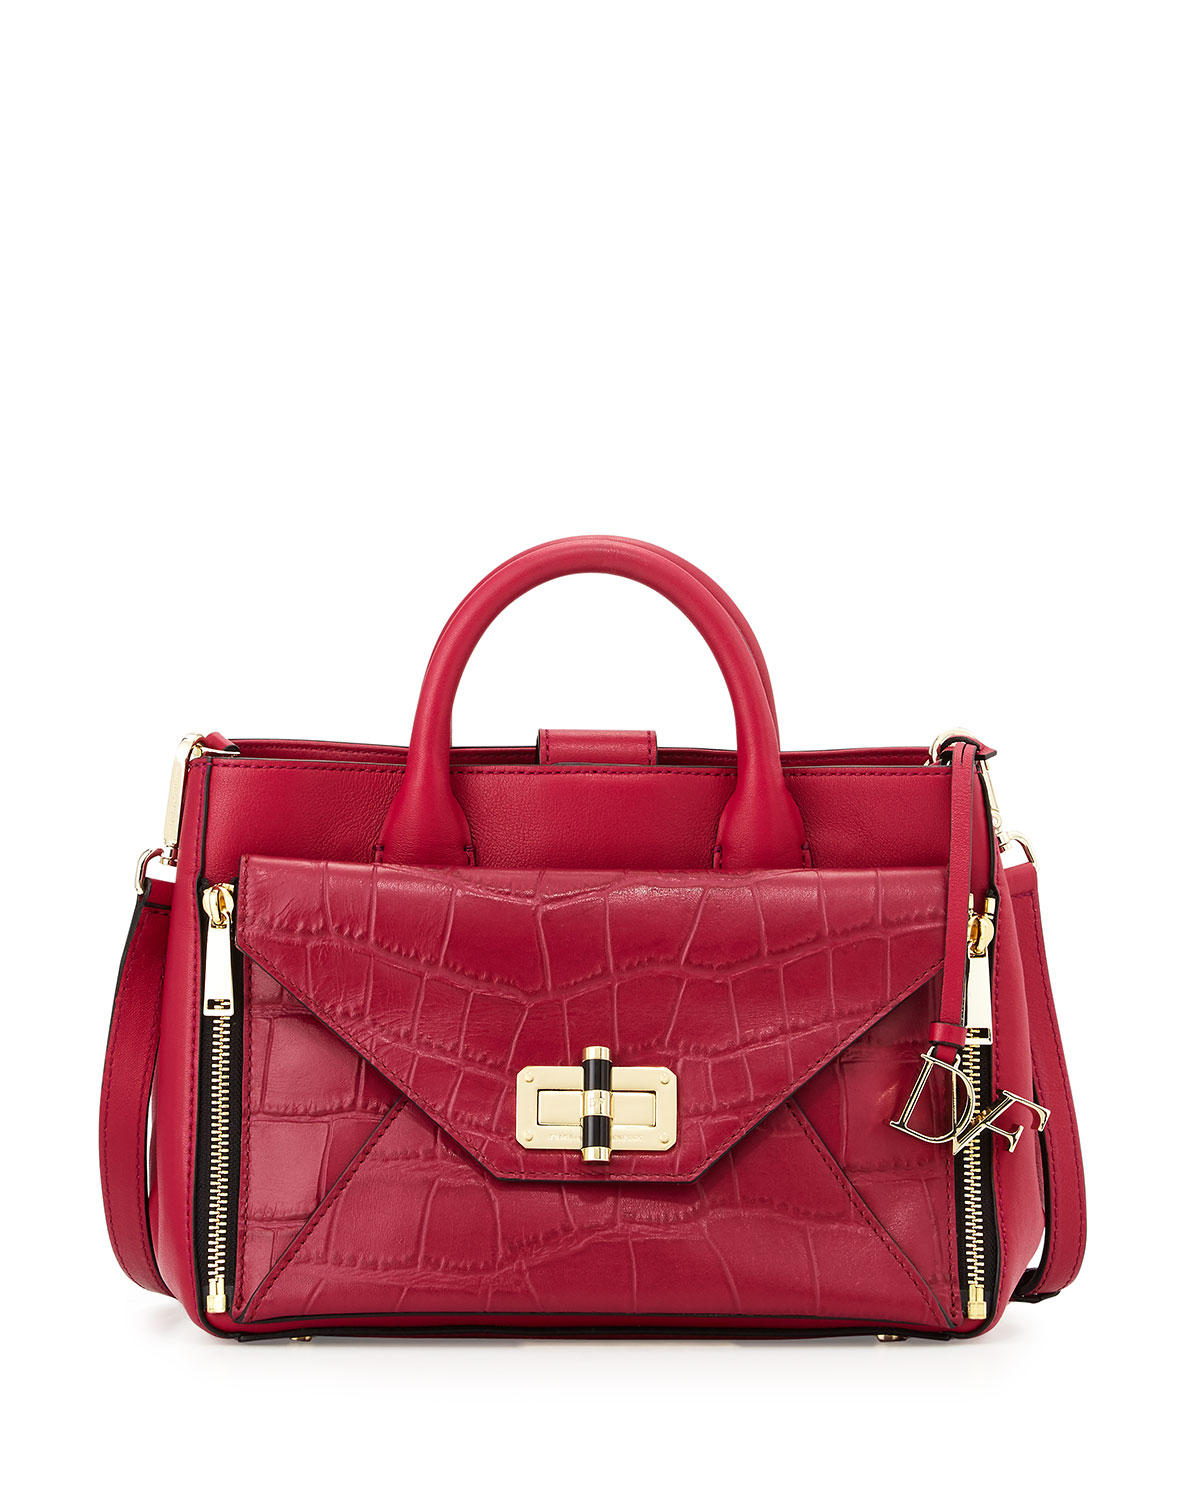 Diane von furstenberg 440 Gallery Secret Agent Tote Bag in Red (CERISE ...